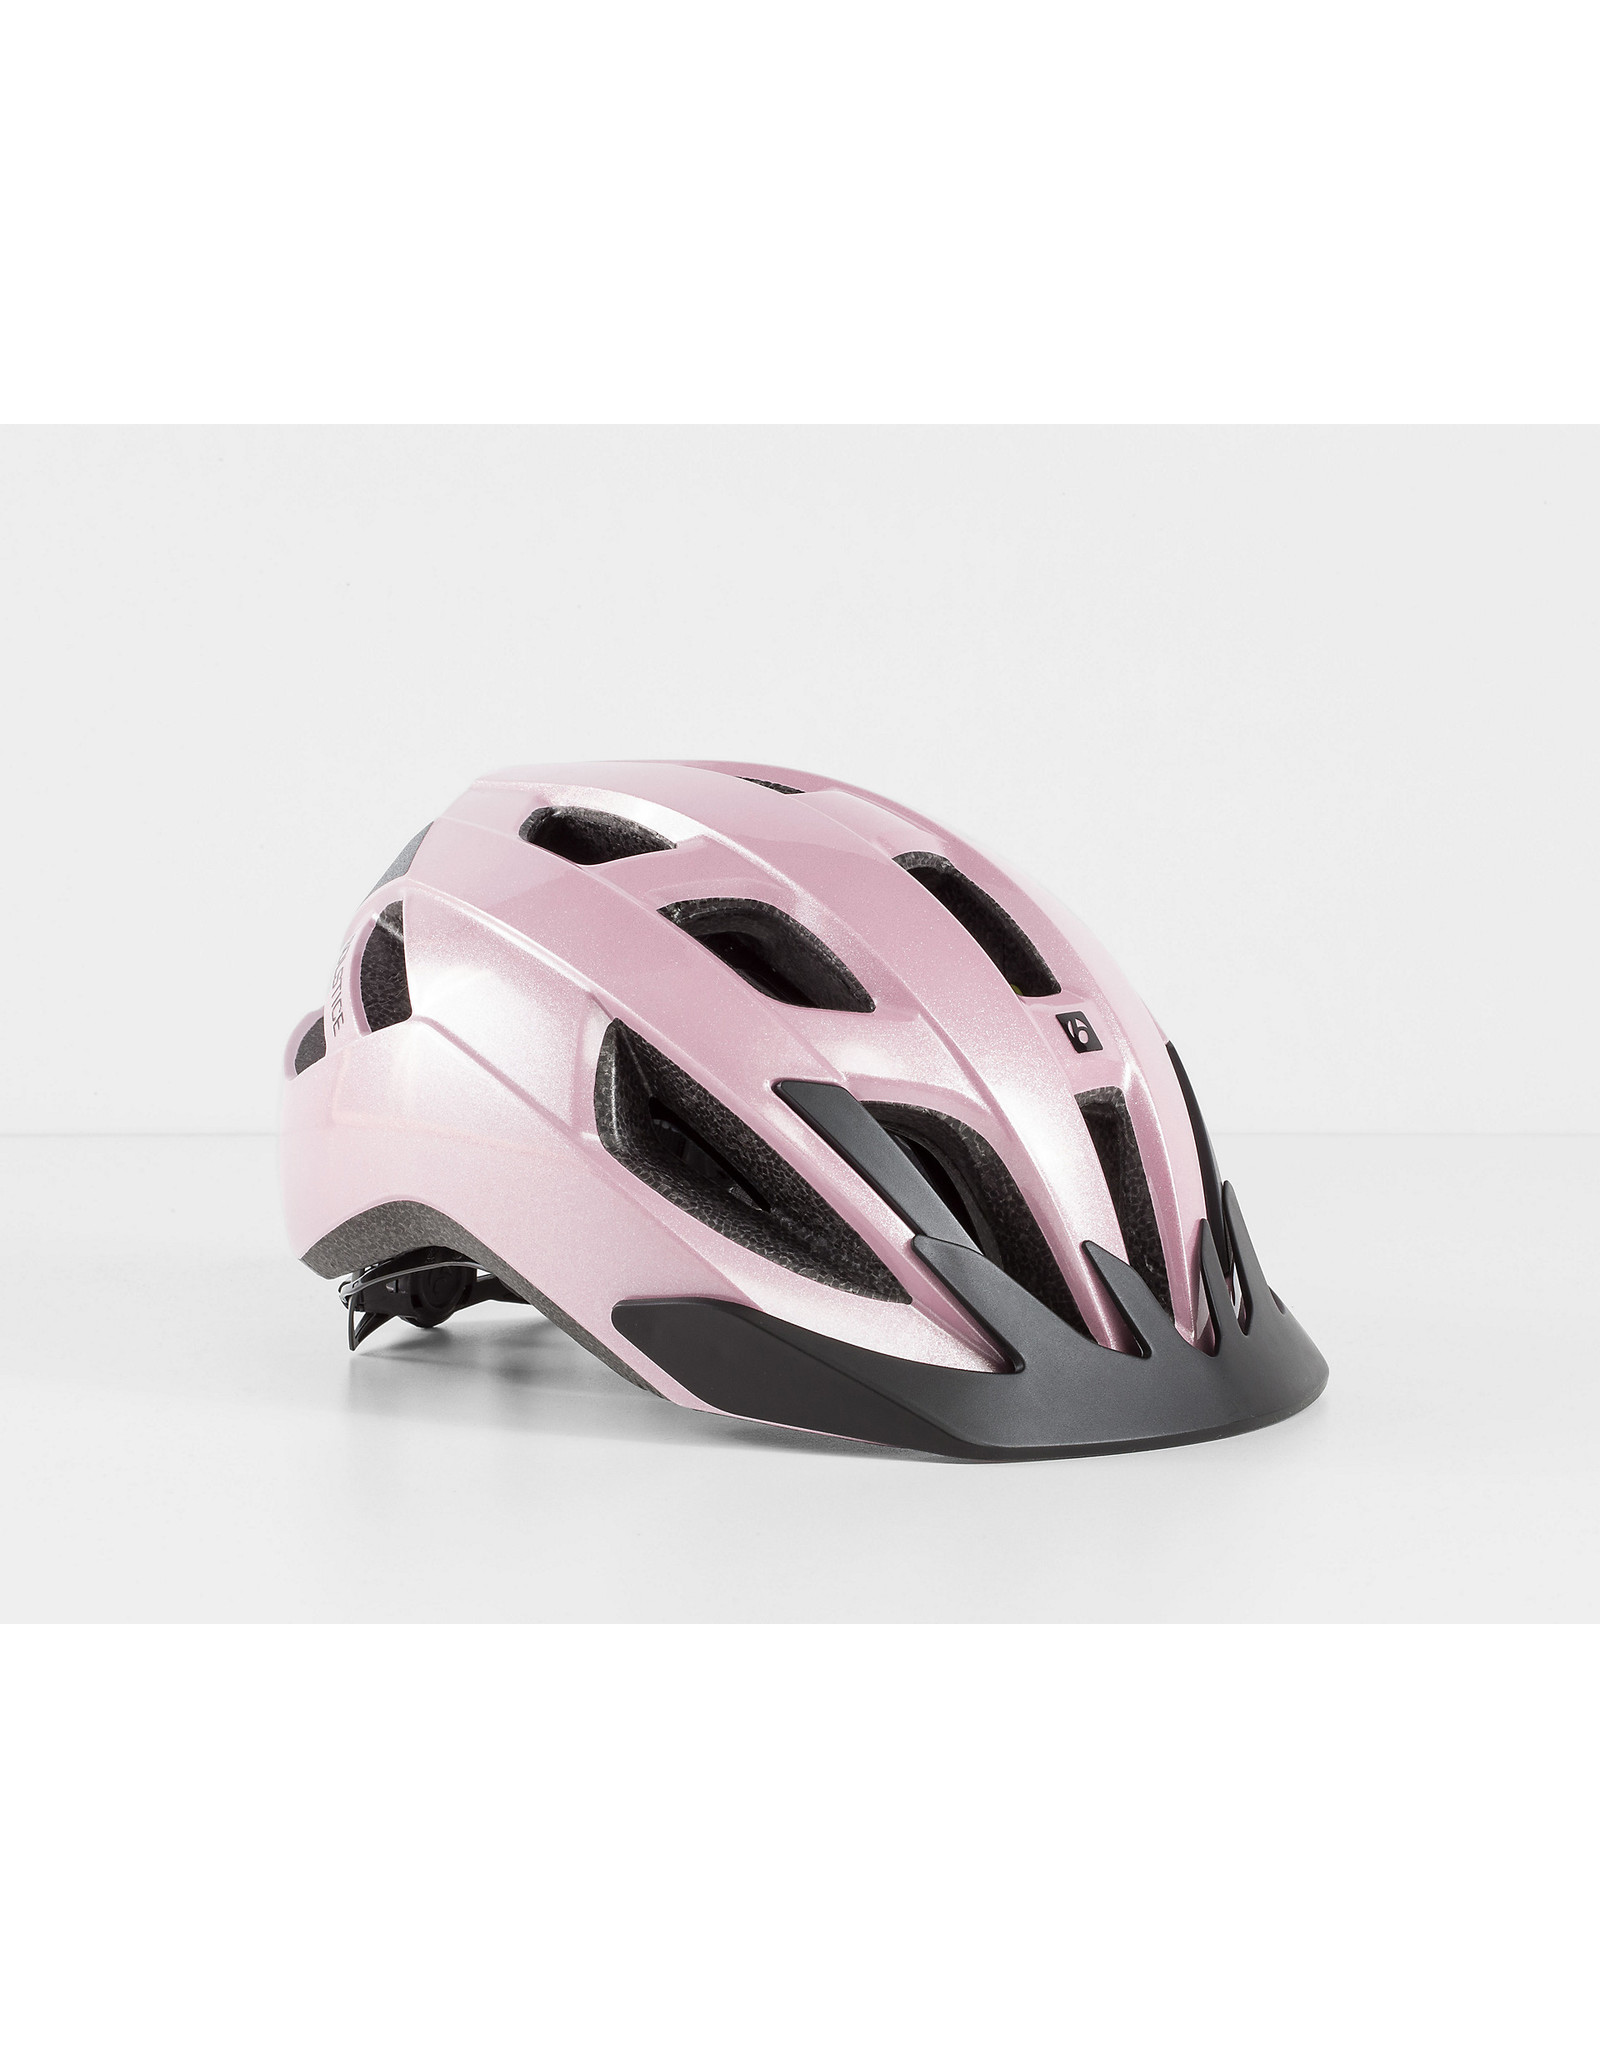 BONTRAGER Bontrager Solstice MIPS Bike Helmet